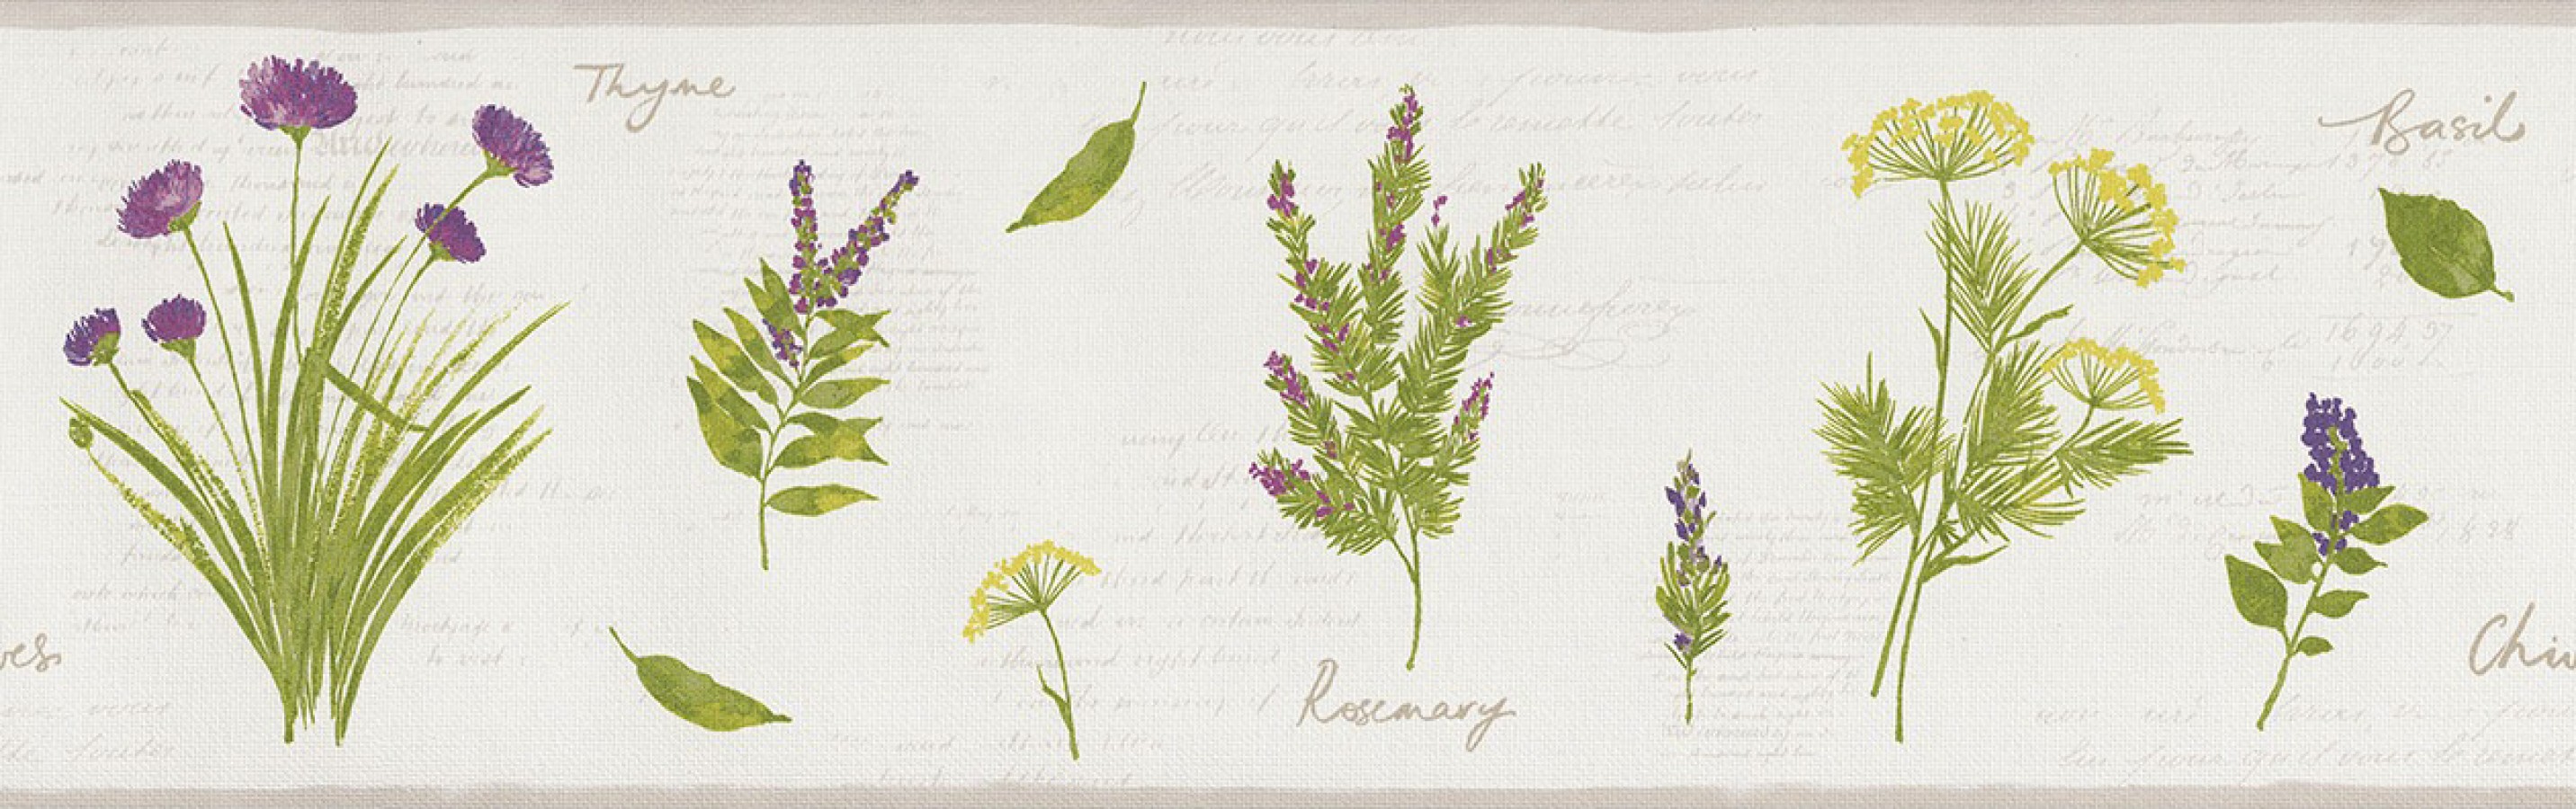 Cenefa plantas aromáticas con letras Lavender Leaves 342708